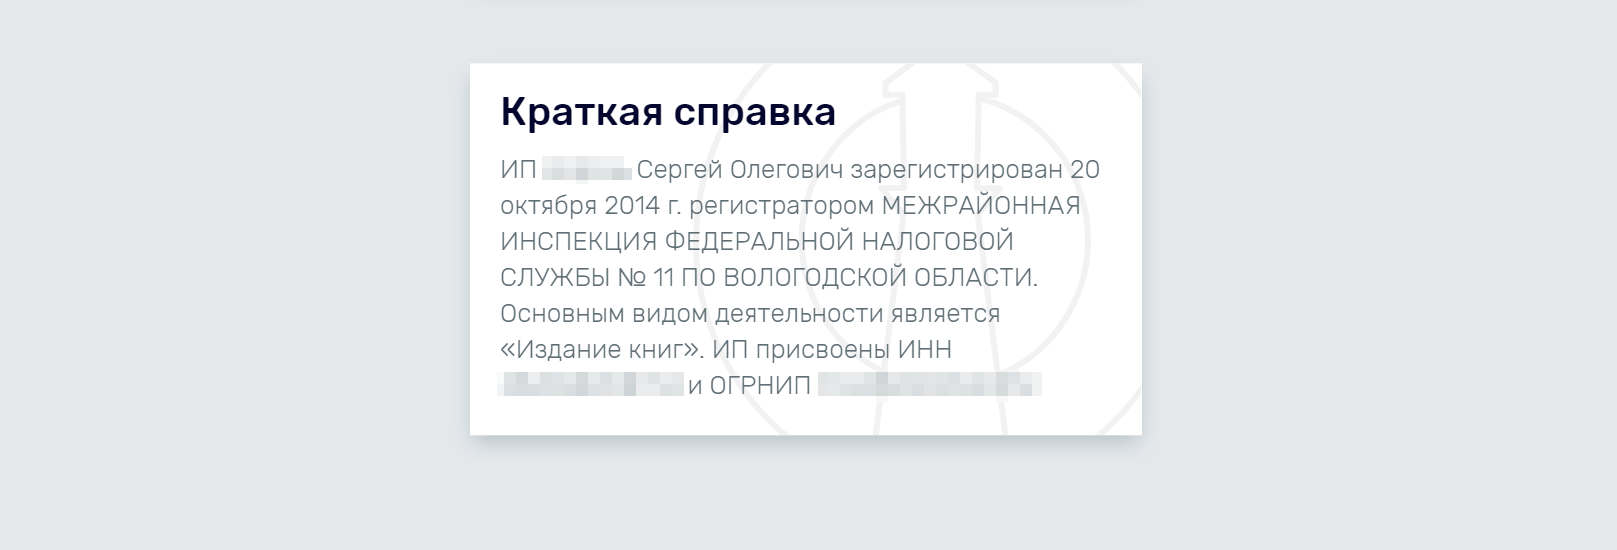 Такие сведения можно найти, например, на сайте rusprofile.ru или на других аналогичных. Они не относятся к персональным данным, поэтому размещать их в открытом доступе закон не запрещает